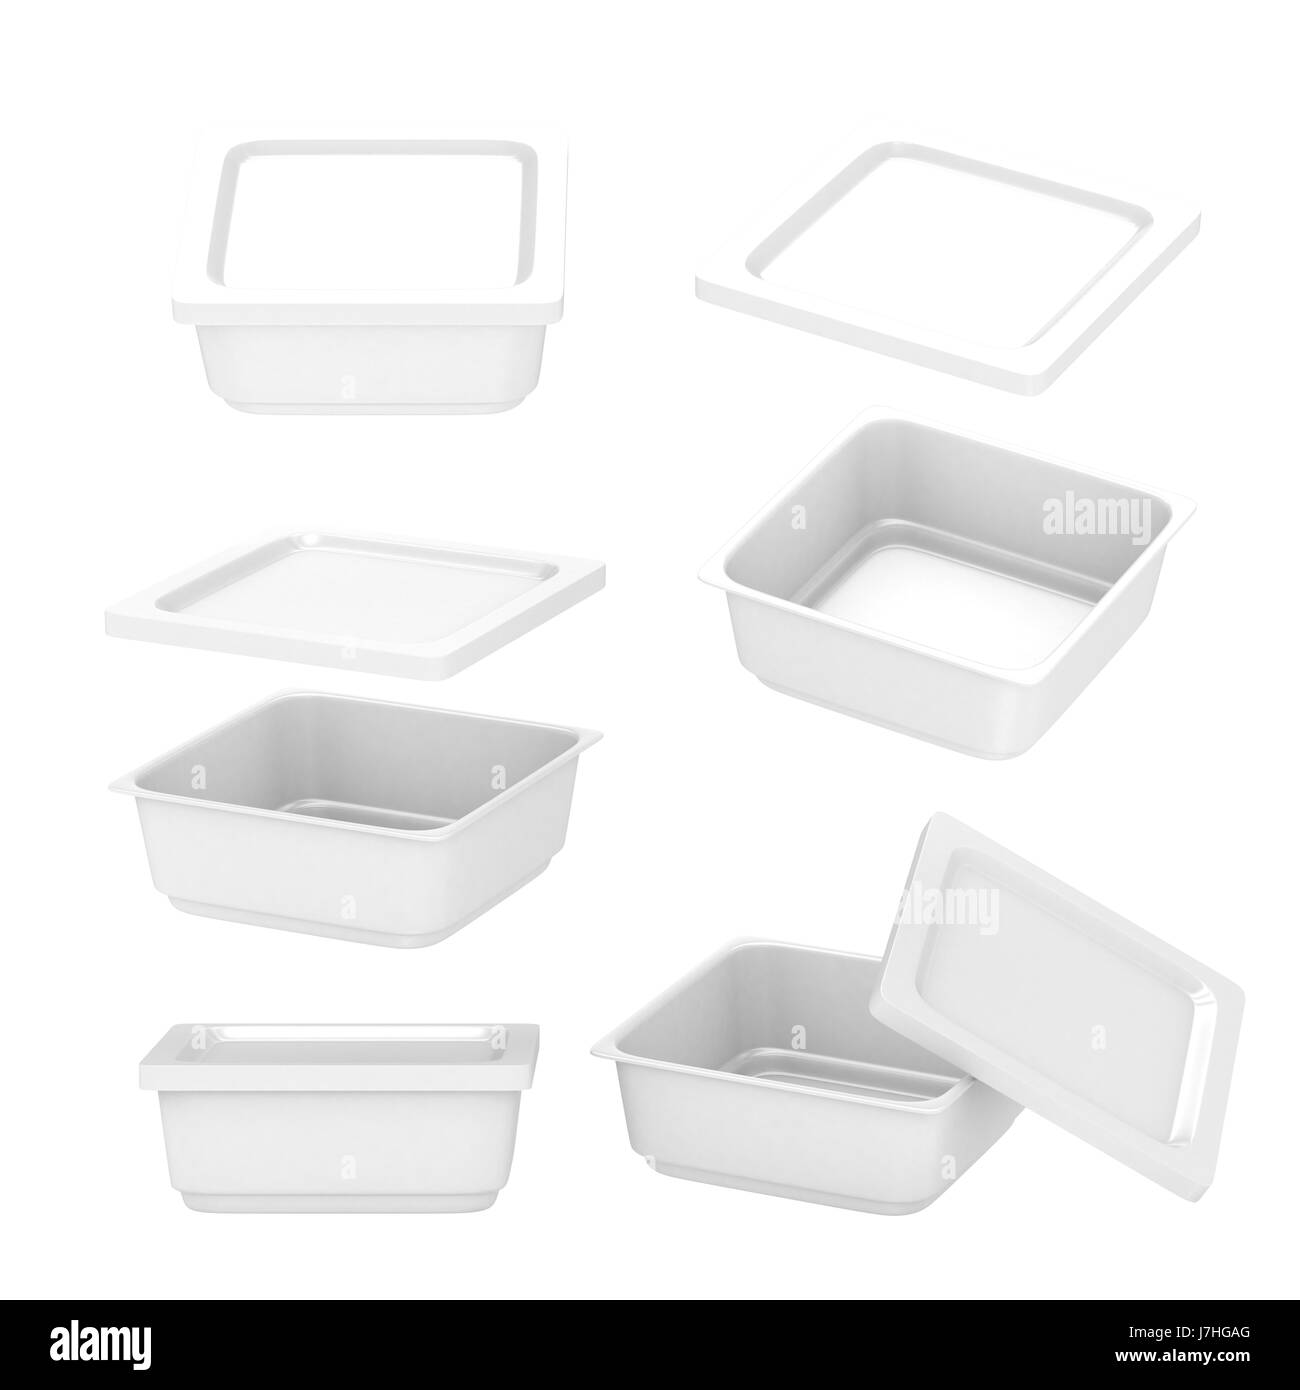 Weißen quadratischen Kunststoff-Behälter zur Herstellung von Lebensmitteln wie frischen Lebensmitteln, Fertiggerichten oder Tiefkühlkost. Vorlage für Ihr Design oder Grafik, clipping-p Stockfoto